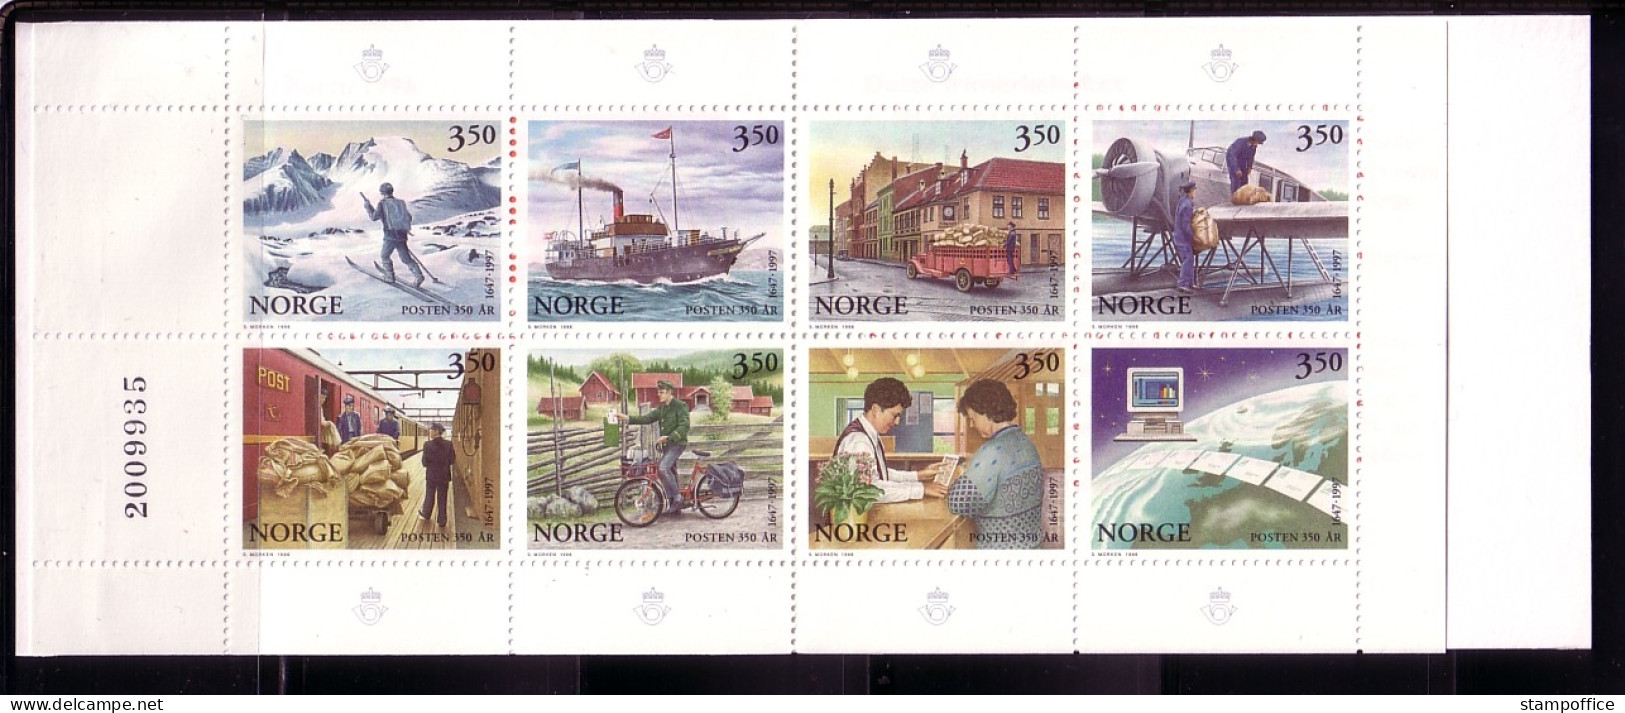 NORWEGEN MH 28 POSTFRISCH(MINT) 350 JAHRE NORWEGISCHE POST(II) FLUGZEUG AUTO SCHIFF - Postzegelboekjes